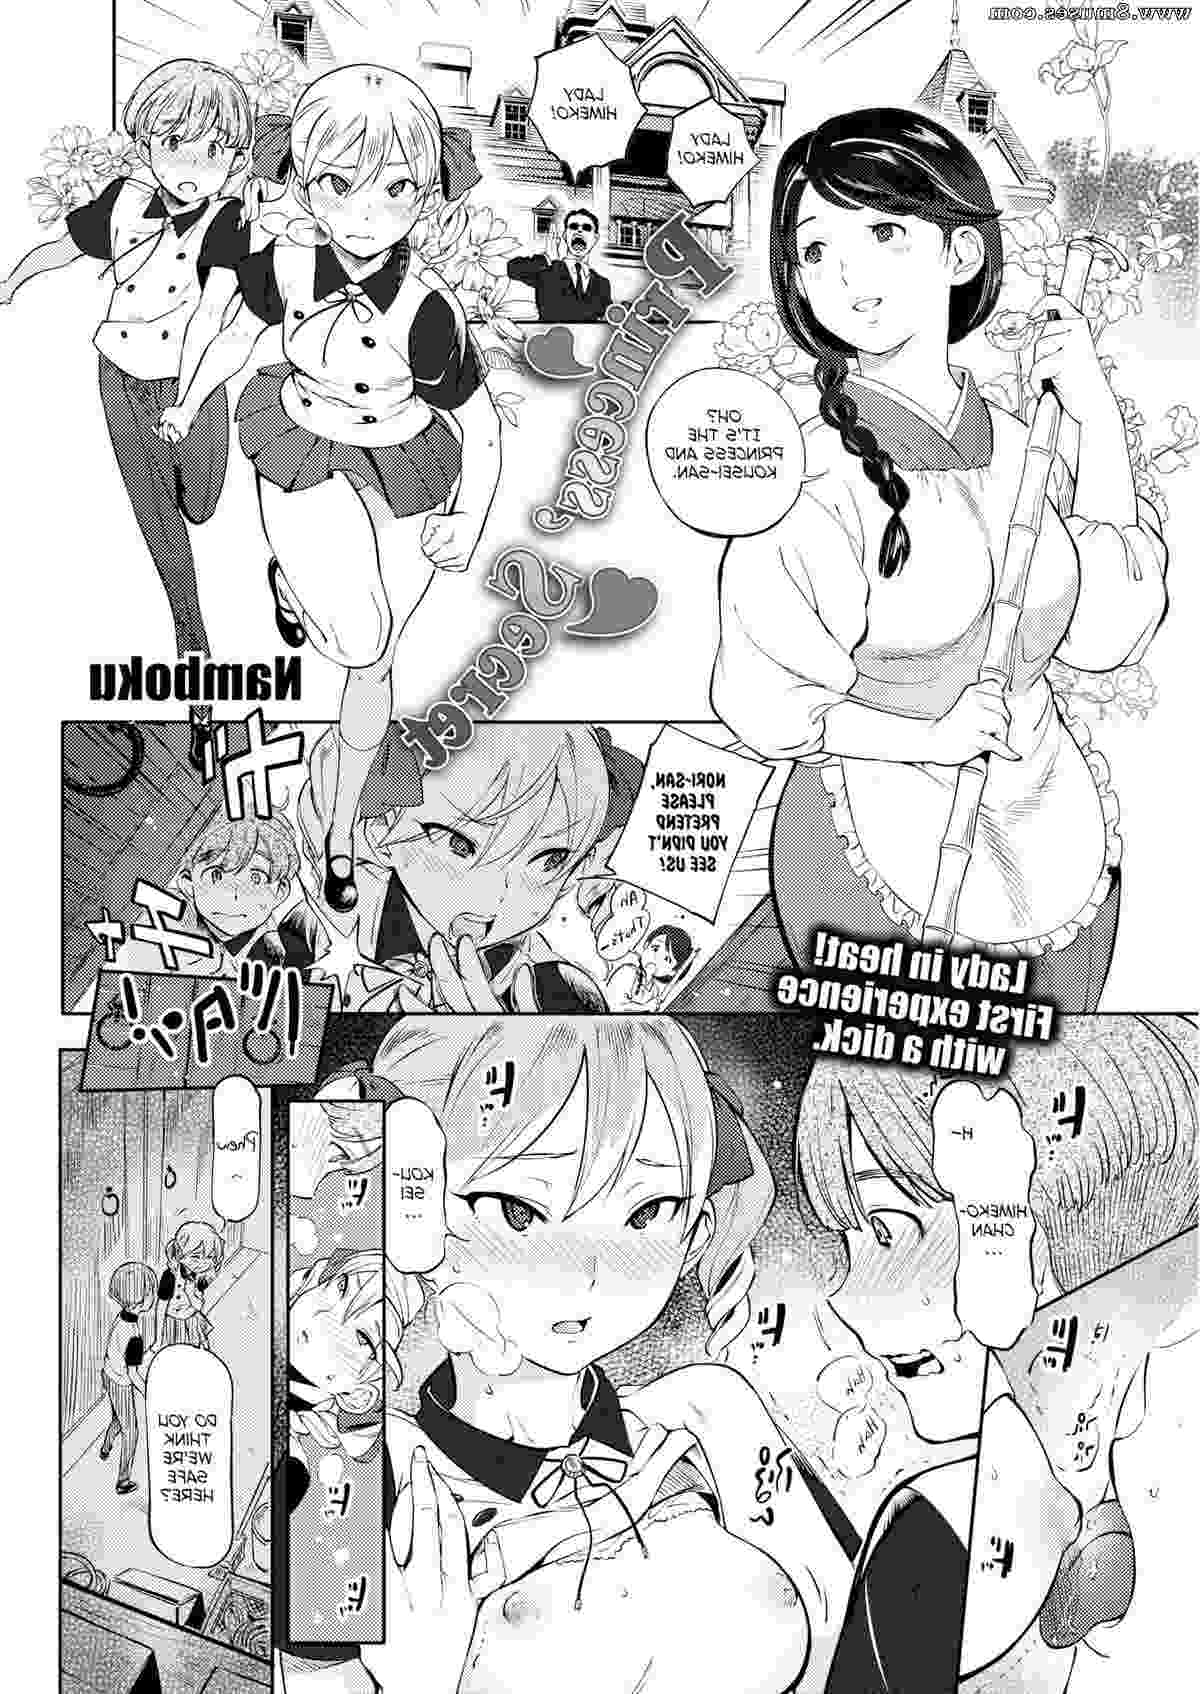 Fakku-Comics/Namboku Namboku__8muses_-_Sex_and_Porn_Comics_2.jpg